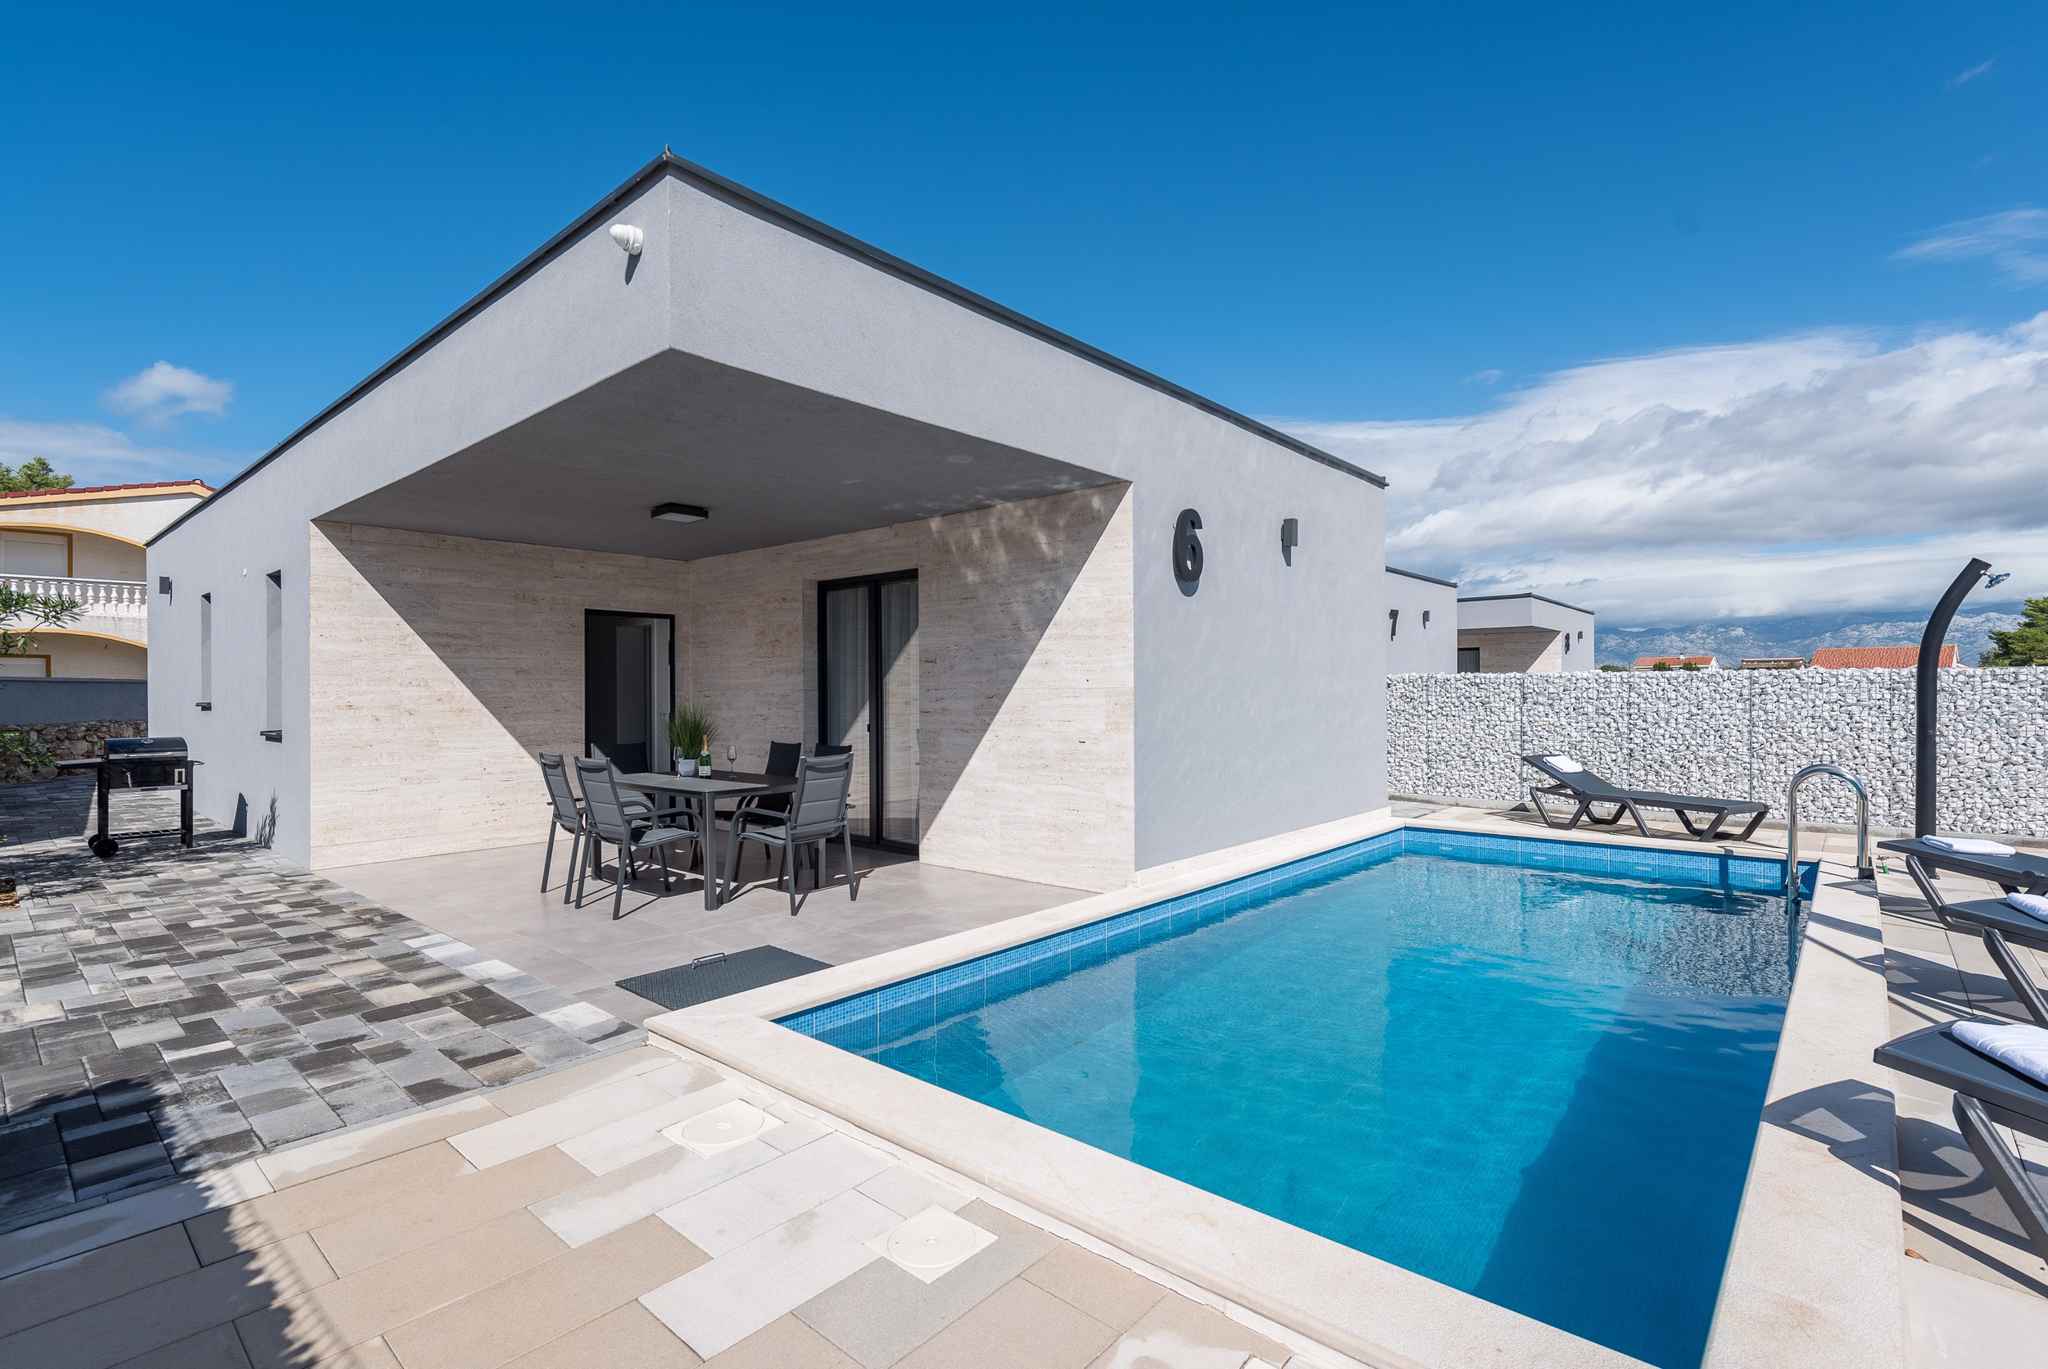 Villa mit 4 Sternen mit Pool in einem Luxusresort  Ferienhaus  kroatische Inseln